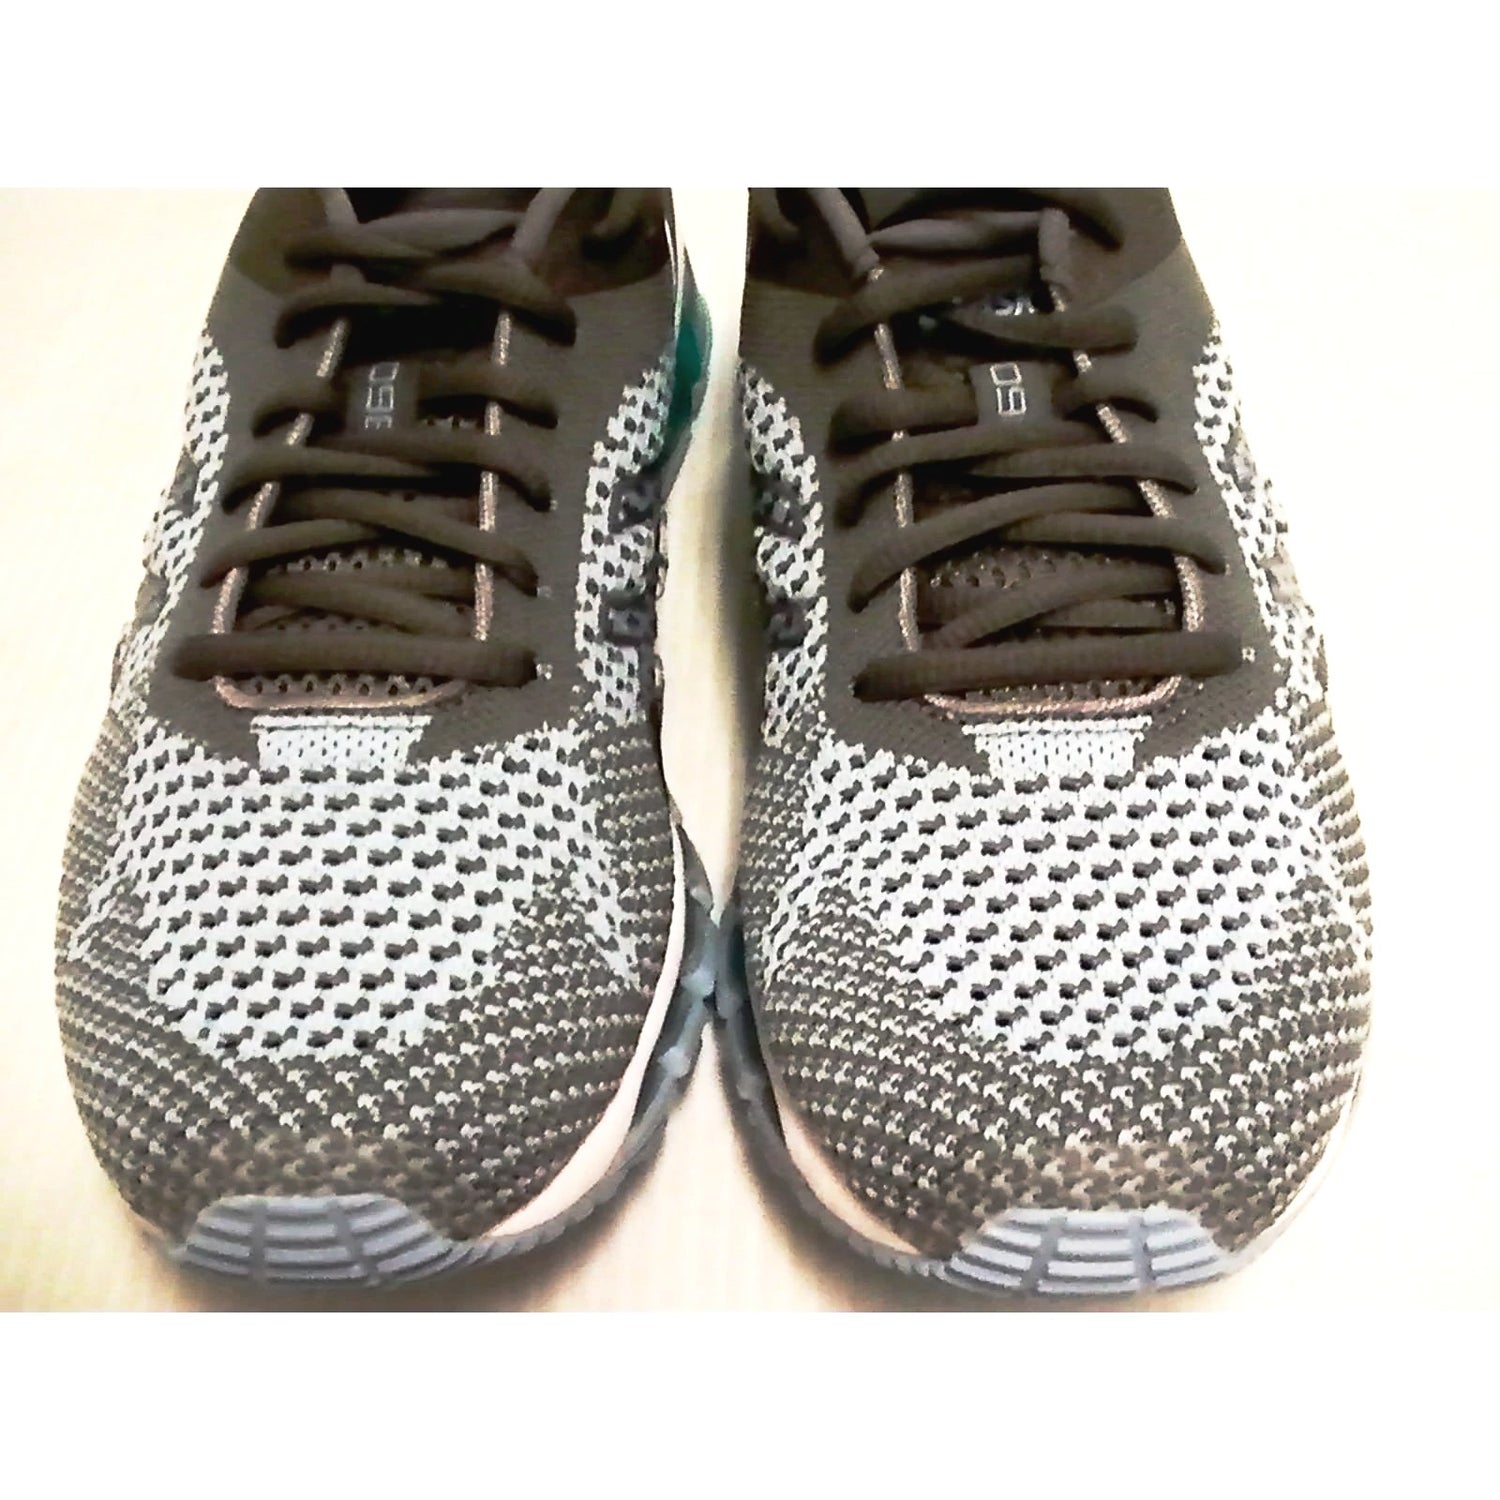 Asics women running shoes gel quantum 360 knit corydalis blue carbon size 9